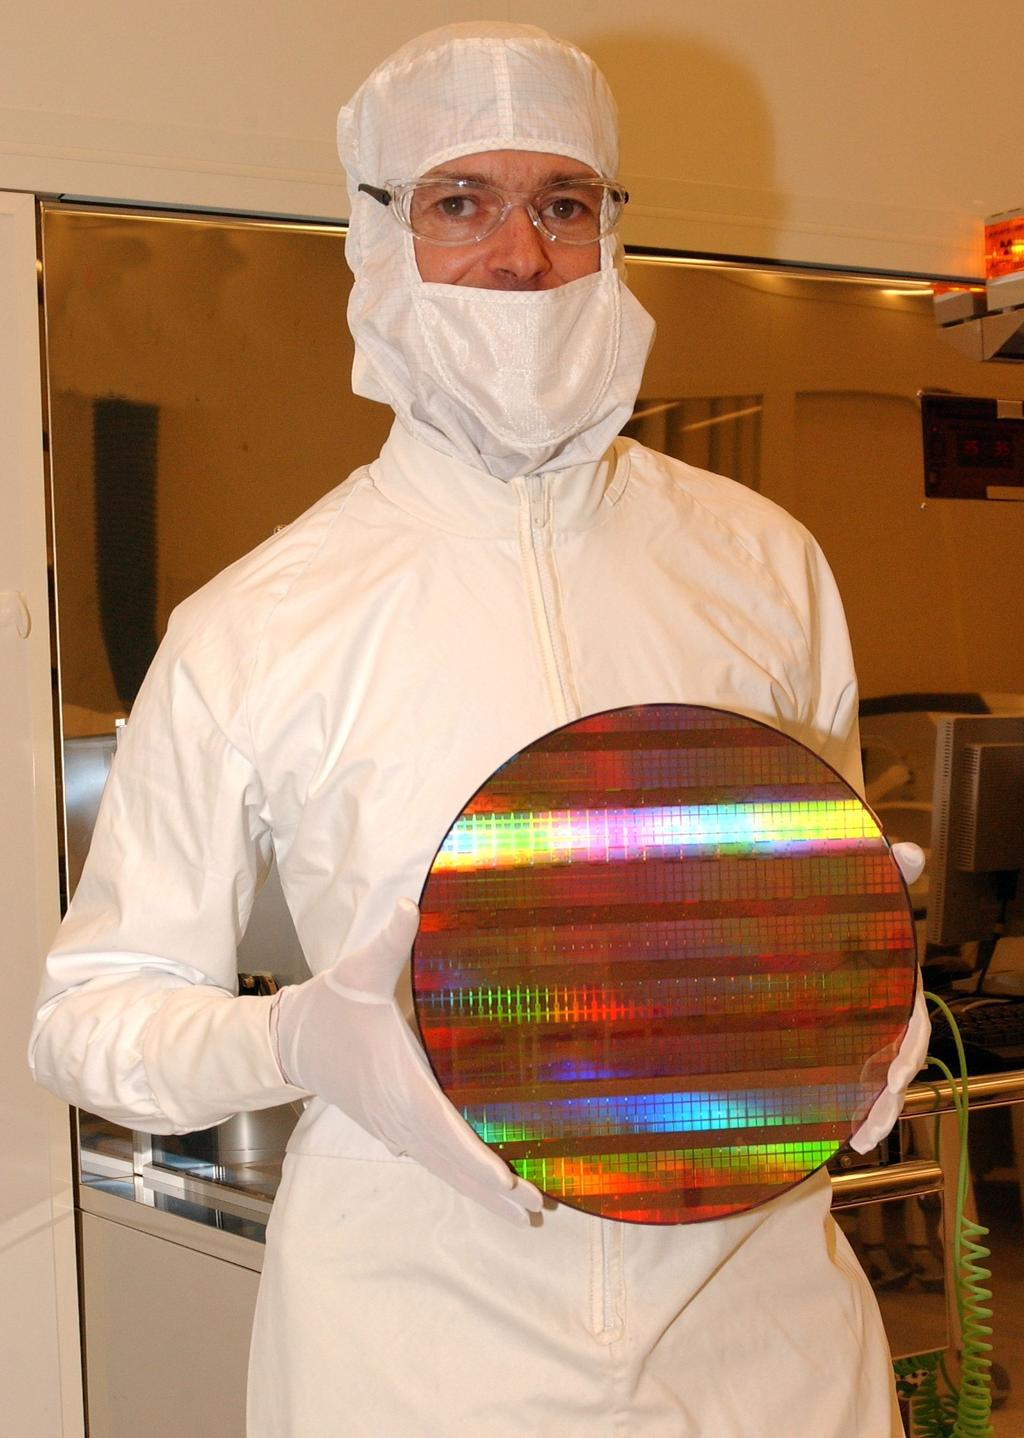 transistor SRAM cell Intel